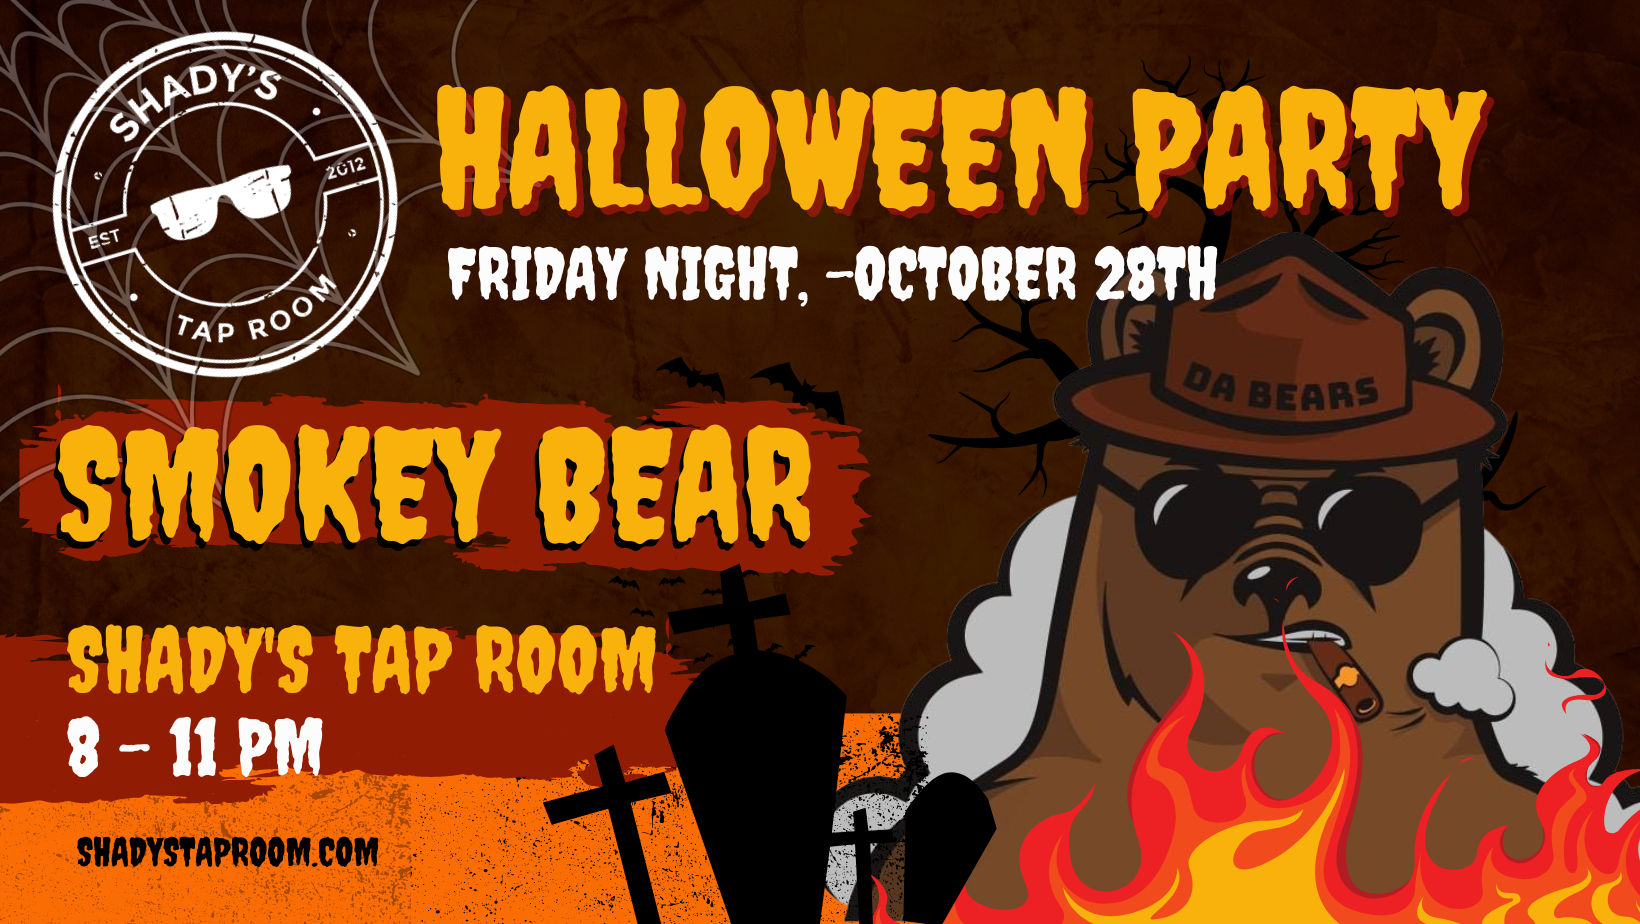 Smokey Bear at Shady's Tap Room Halloween